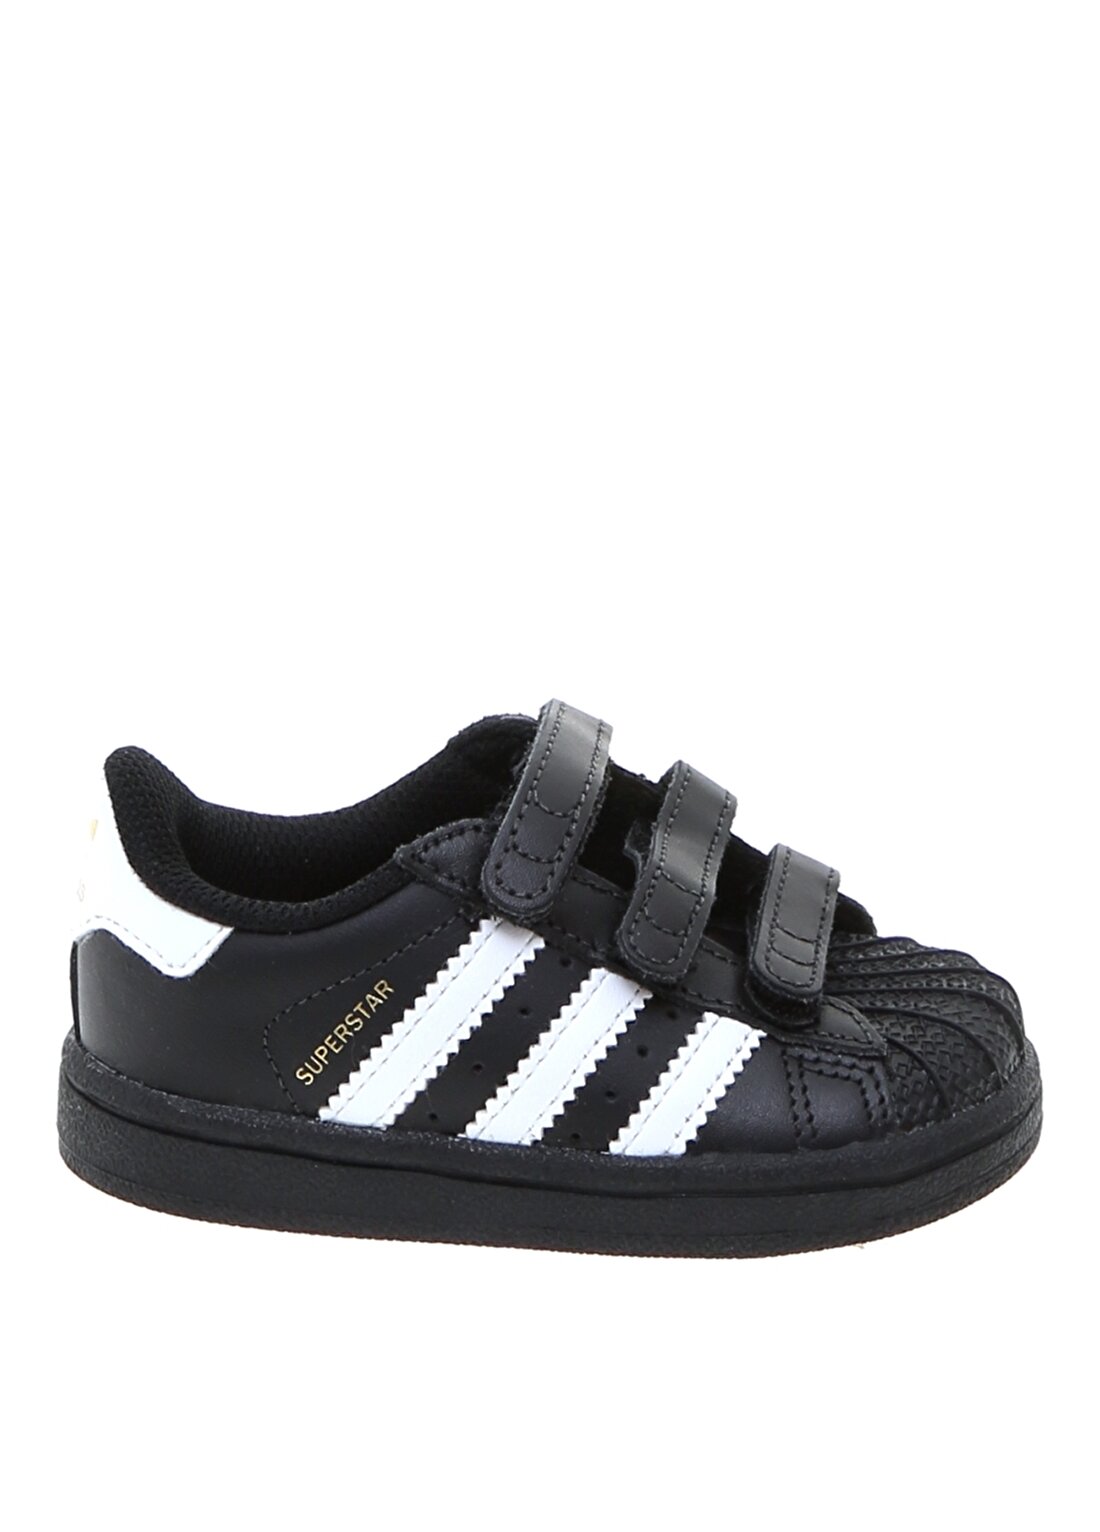 Adidas BZ0419 Superstar Cf Bebek Yürüyüş Ayakkabısı